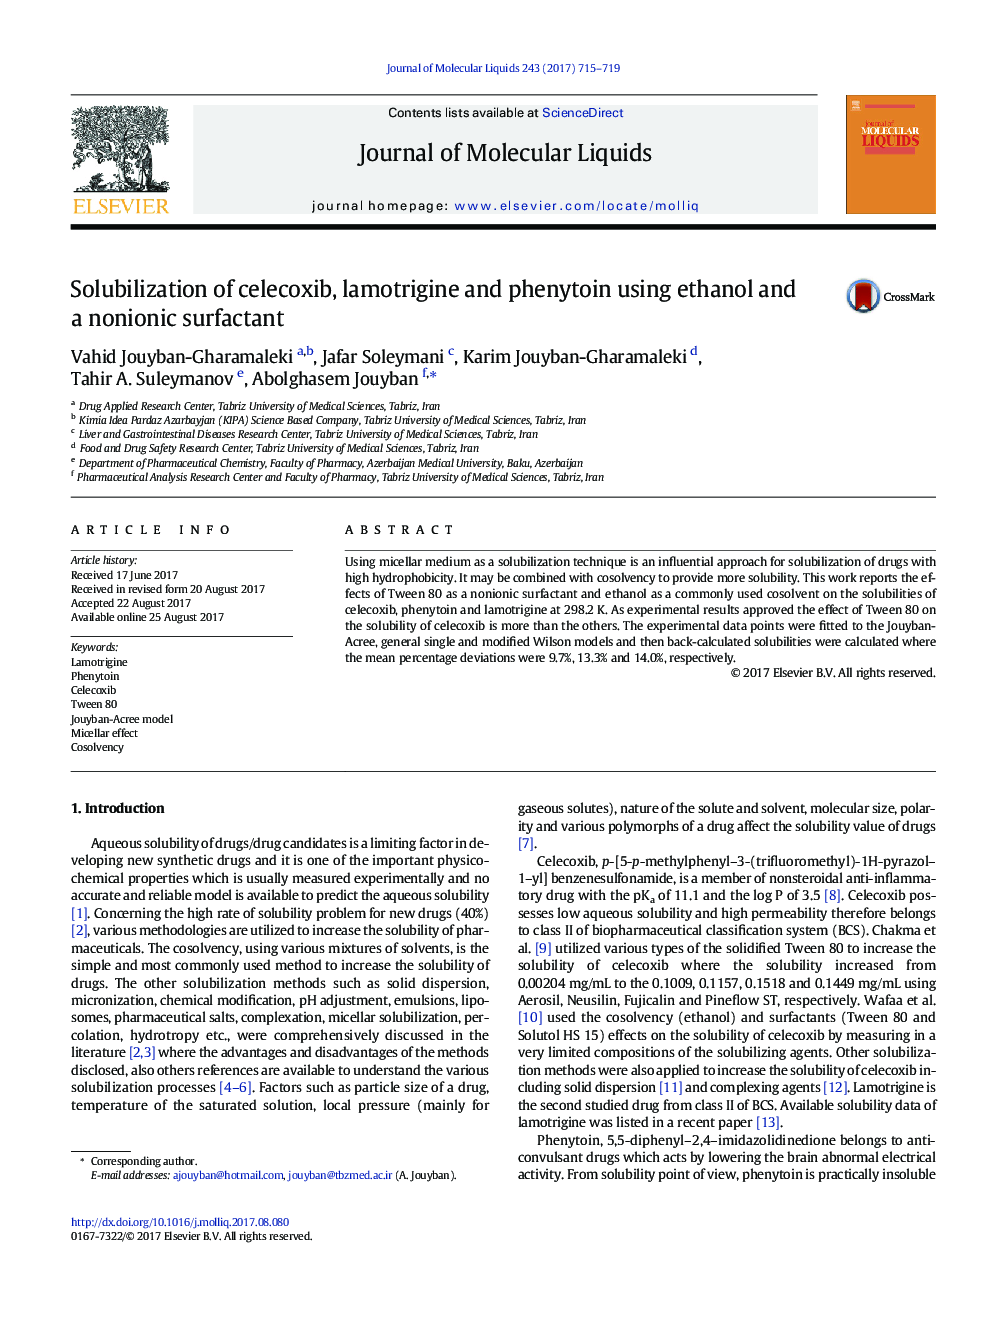 Solubilization of celecoxib, lamotrigine and phenytoin using ethanol and a nonionic surfactant